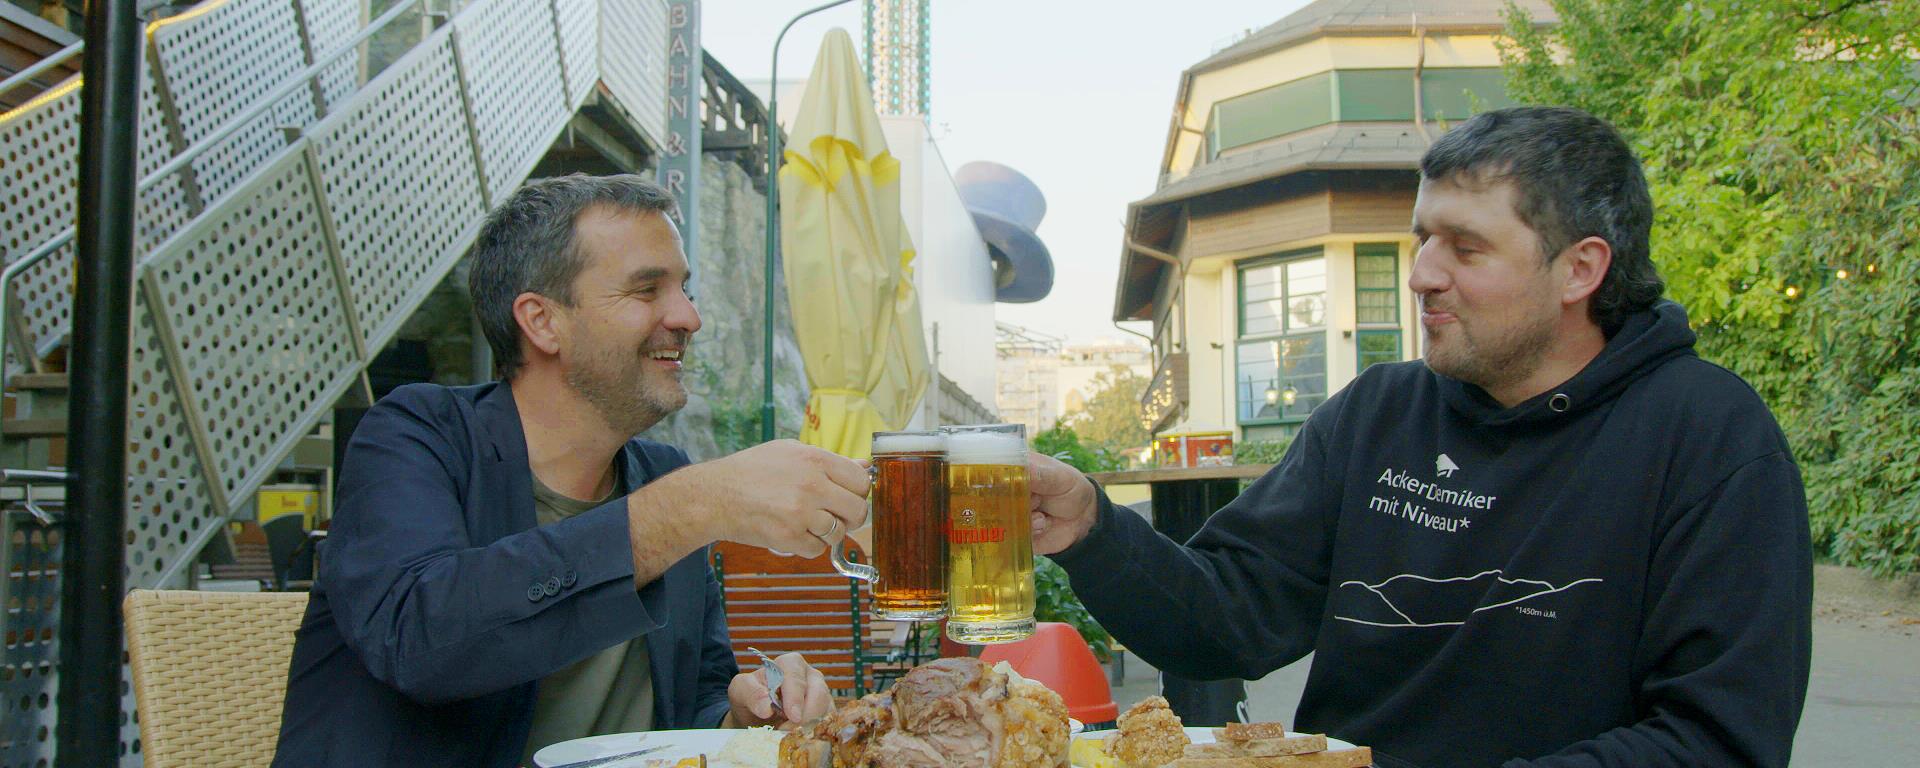 Dva muži sedí u stolu a ťukají si velkým pivem. Na stole jsou hranolky a uzené koleno.